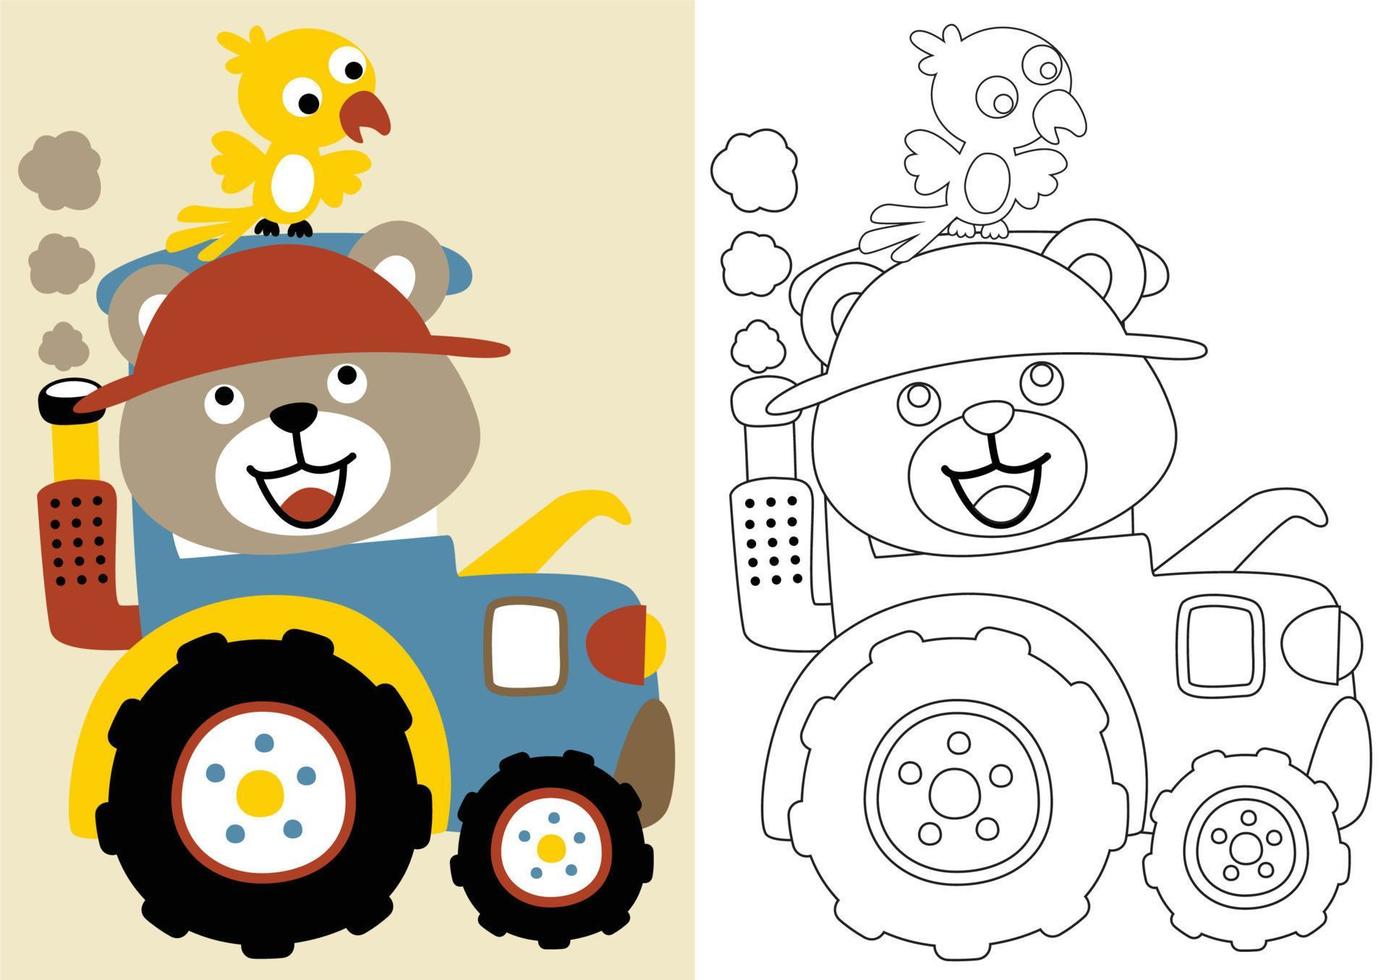 dessin animé vectoriel d'un tracteur à entraînement d'ours mignon avec un oiseau sur la tête, un livre de coloriage ou une page